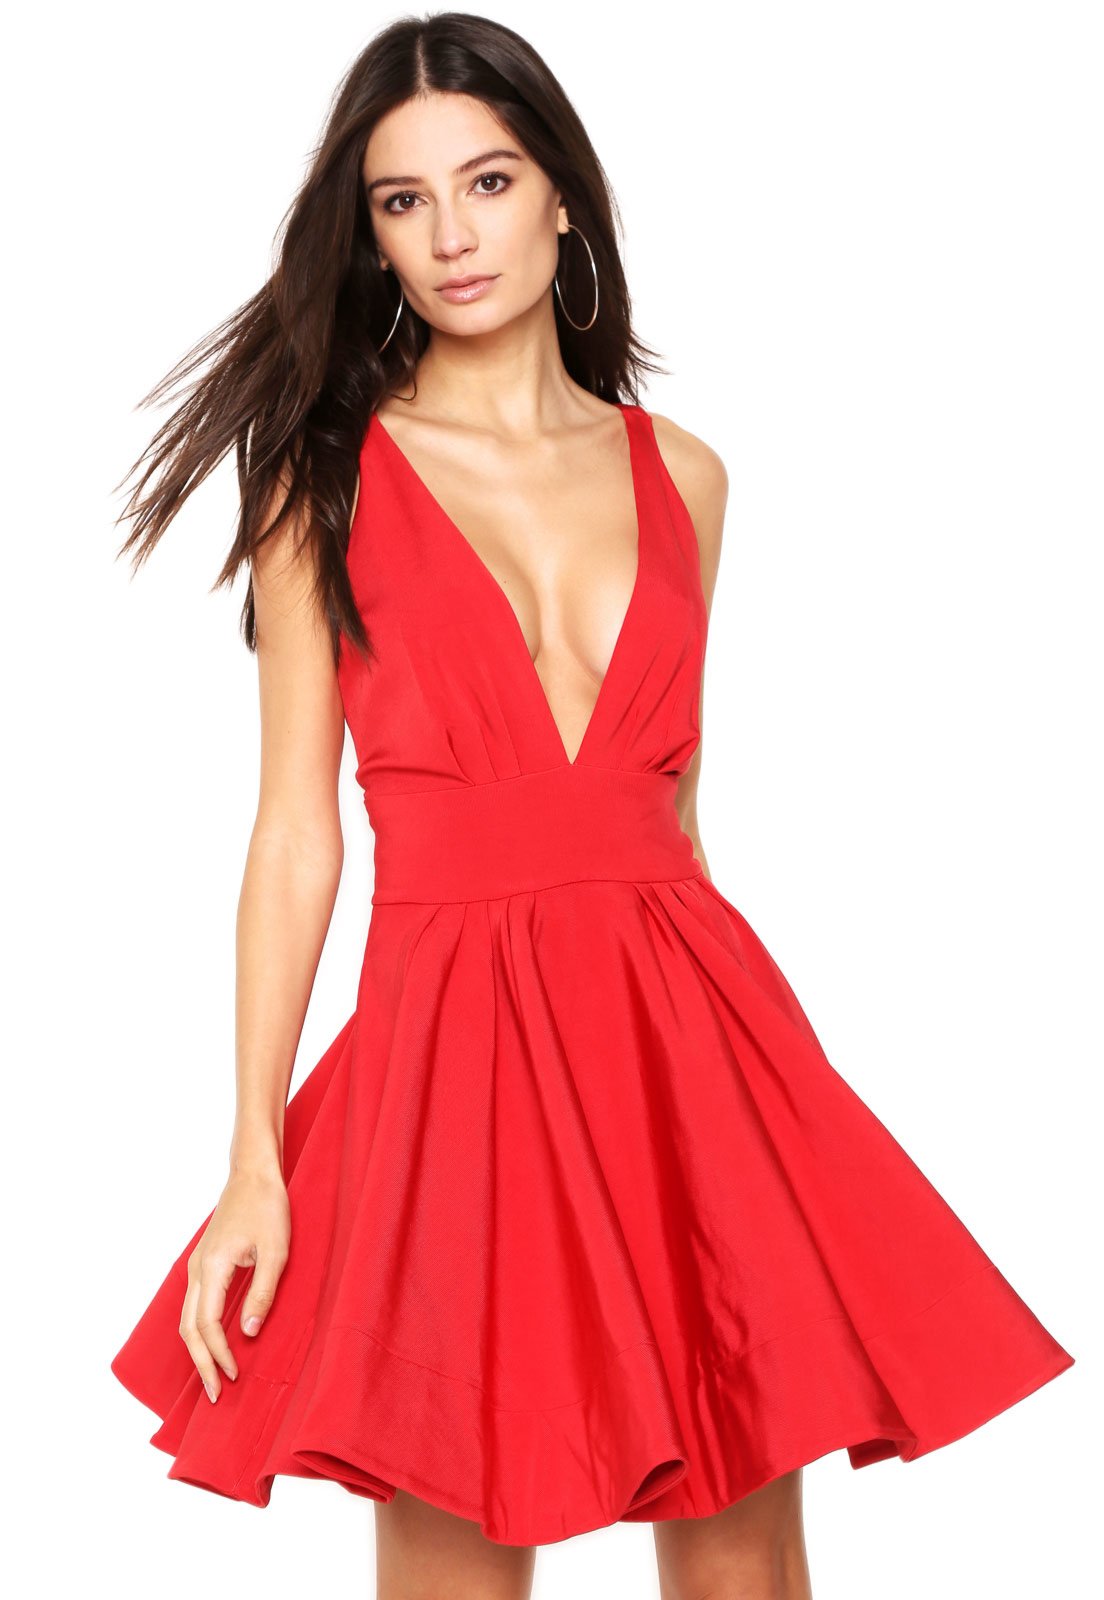 vestido vermelho gode curto